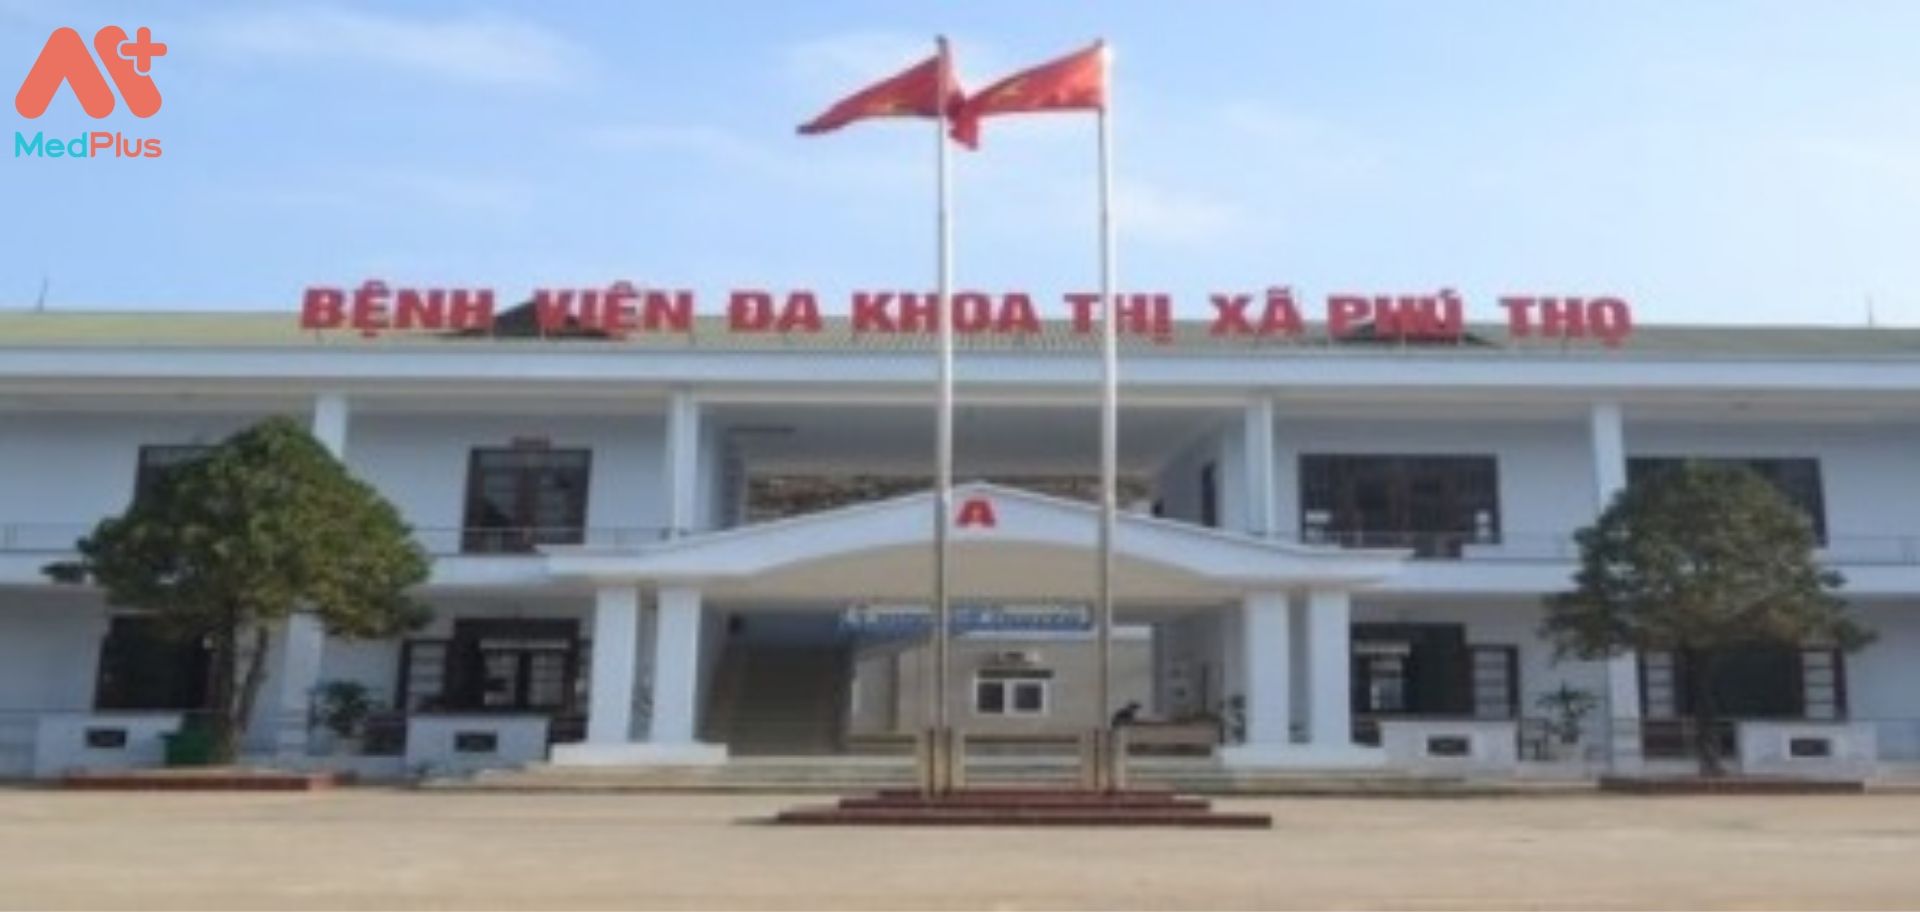 Bệnh viện đa khoa thị xã Phú Thọ